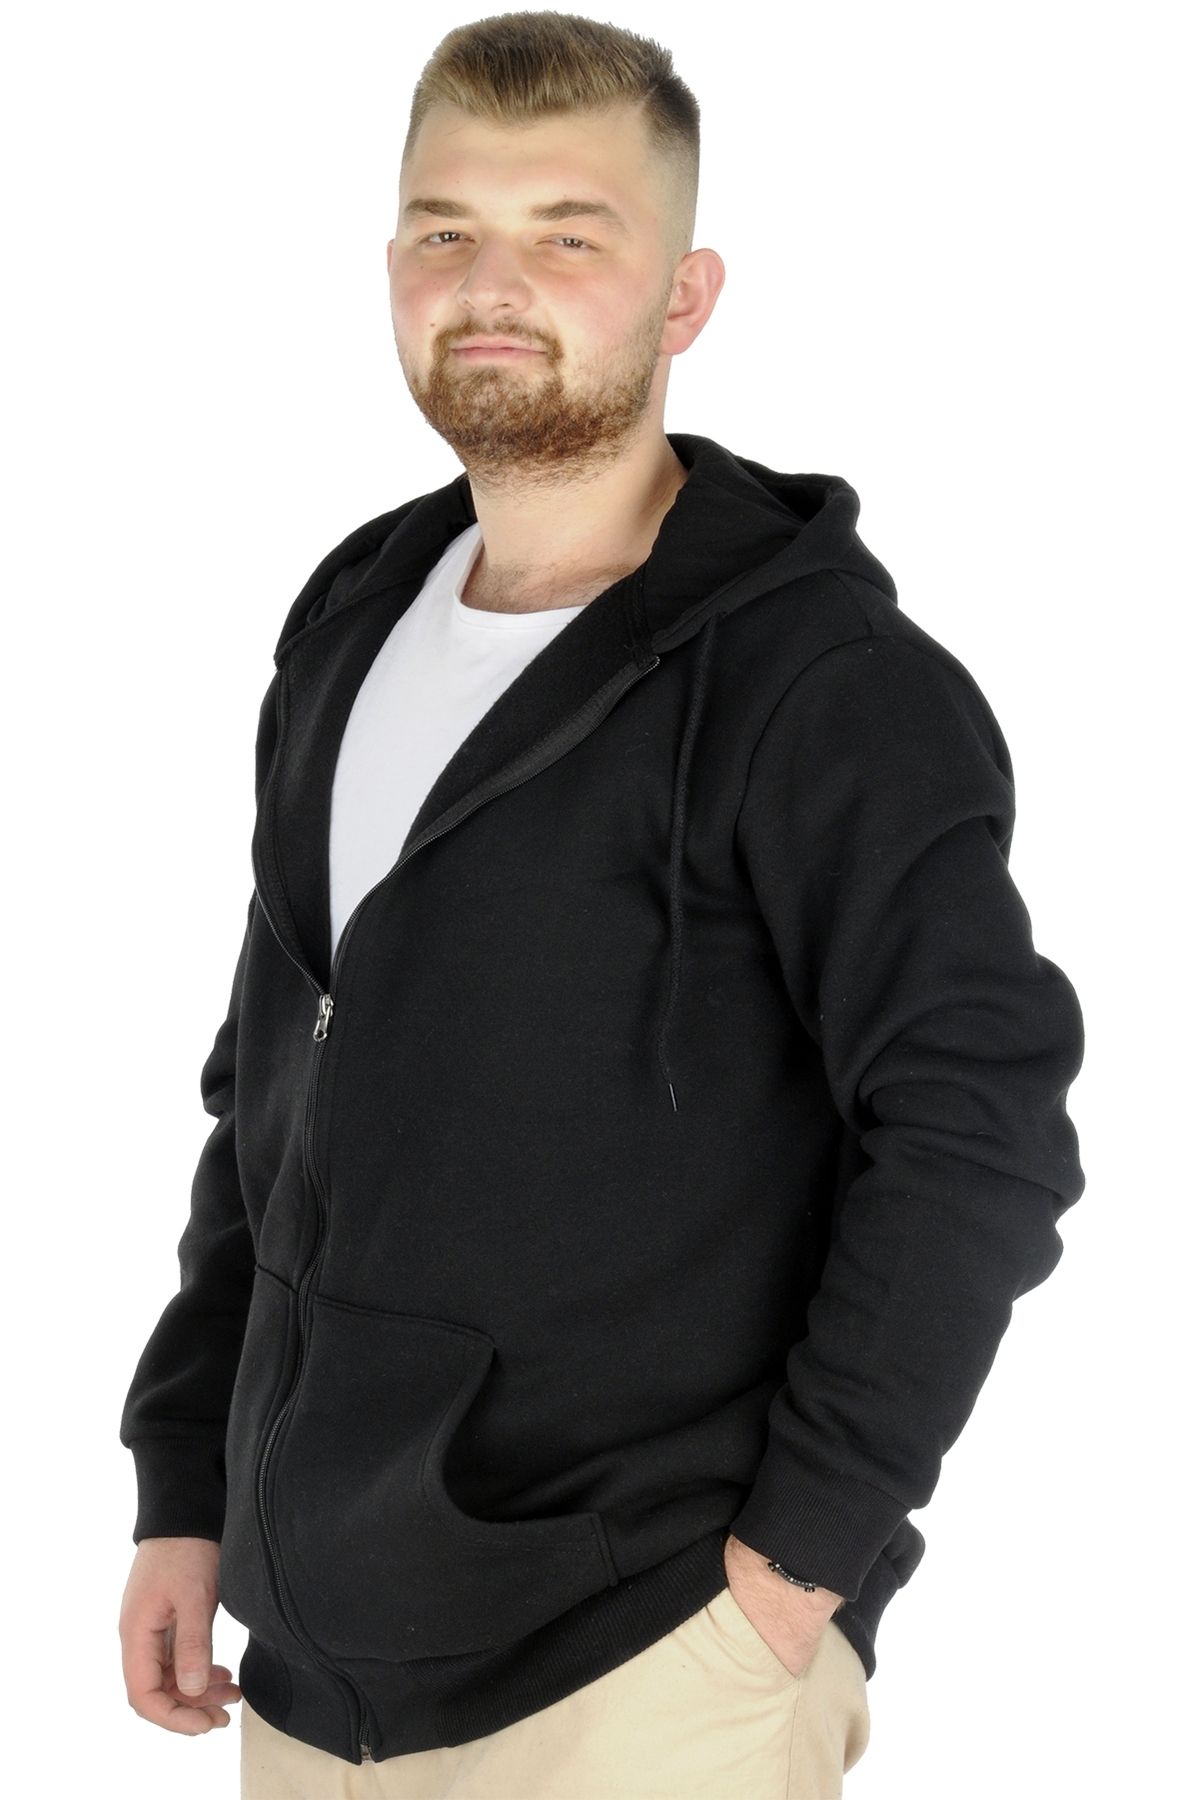 Modexl Mode Xl Büyük Beden Erkek Sweatshirt Zippered Recycle B20533 Siyah